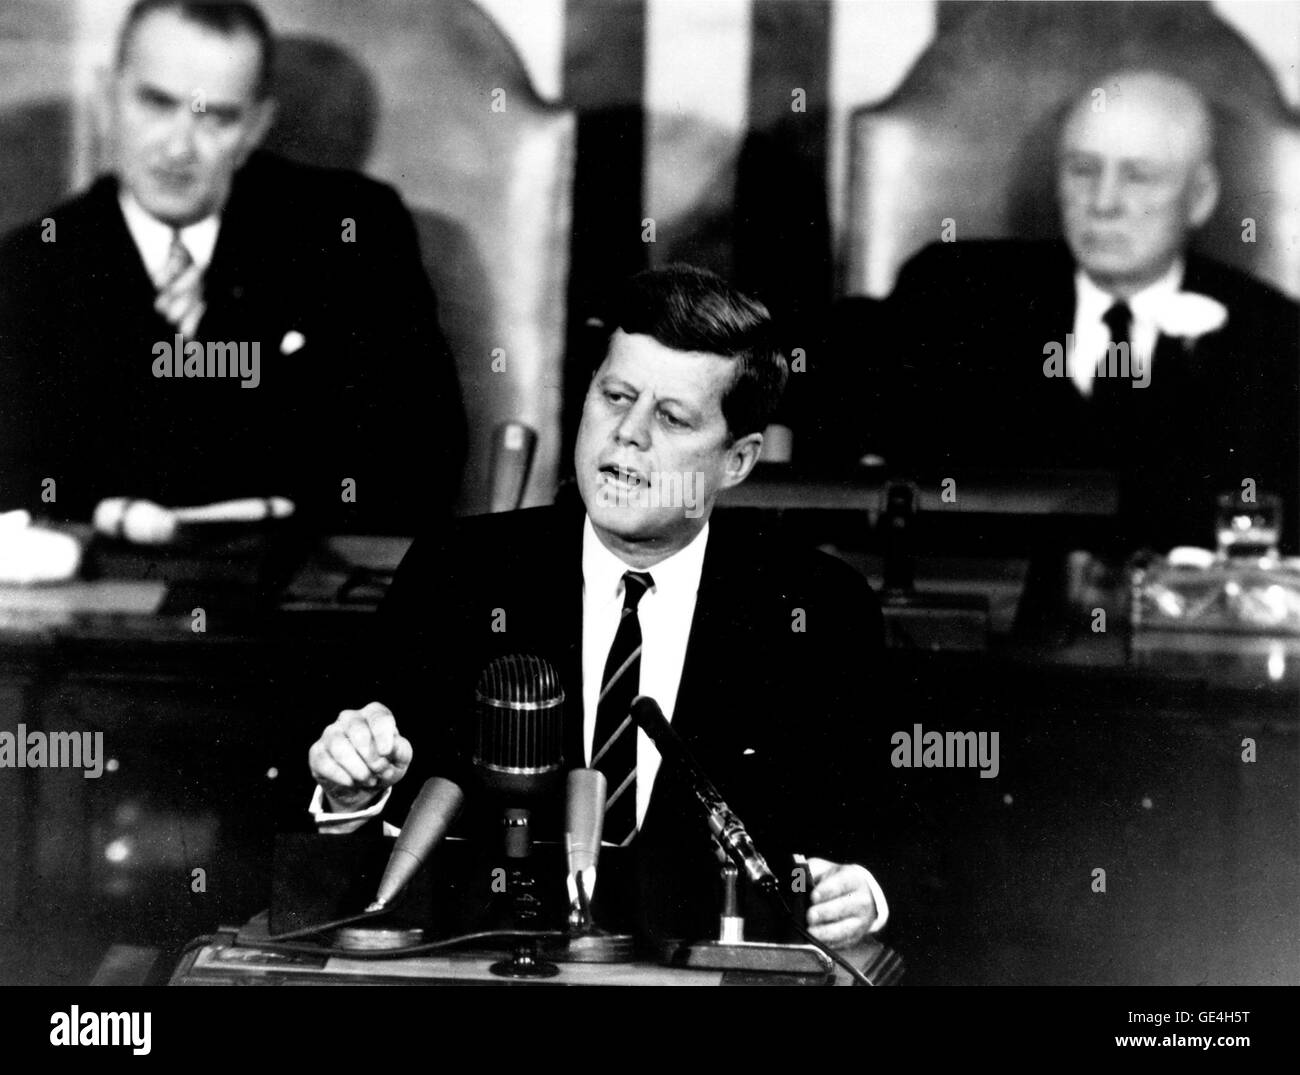 Präsident John F. Kennedy in seiner historischen Botschaft in einer gemeinsamen Sitzung des Kongresses, am 25. Mai 1961 erklärte, "..." "Ich glaube, dass diese Nation sollte sich verpflichten, das Ziel zu erreichen, noch in diesem Jahrzehnt, einen Mann auf dem Mond zu landen und ihn sicher zur Erde zurück." Dieses Ziel wurde erreicht, als Astronaut Neil A. Armstrong der erste Mensch auf dem Mond um 10:56 Uhr MESZ, 20. Juli 1969 seinen Fuß gesetzt wurde. Im Hintergrund gezeigt werden, (links) Vizepräsident Lyndon Johnson und (rechts) Sprecher des Hauses Sam T. Rayburn. Stockfoto